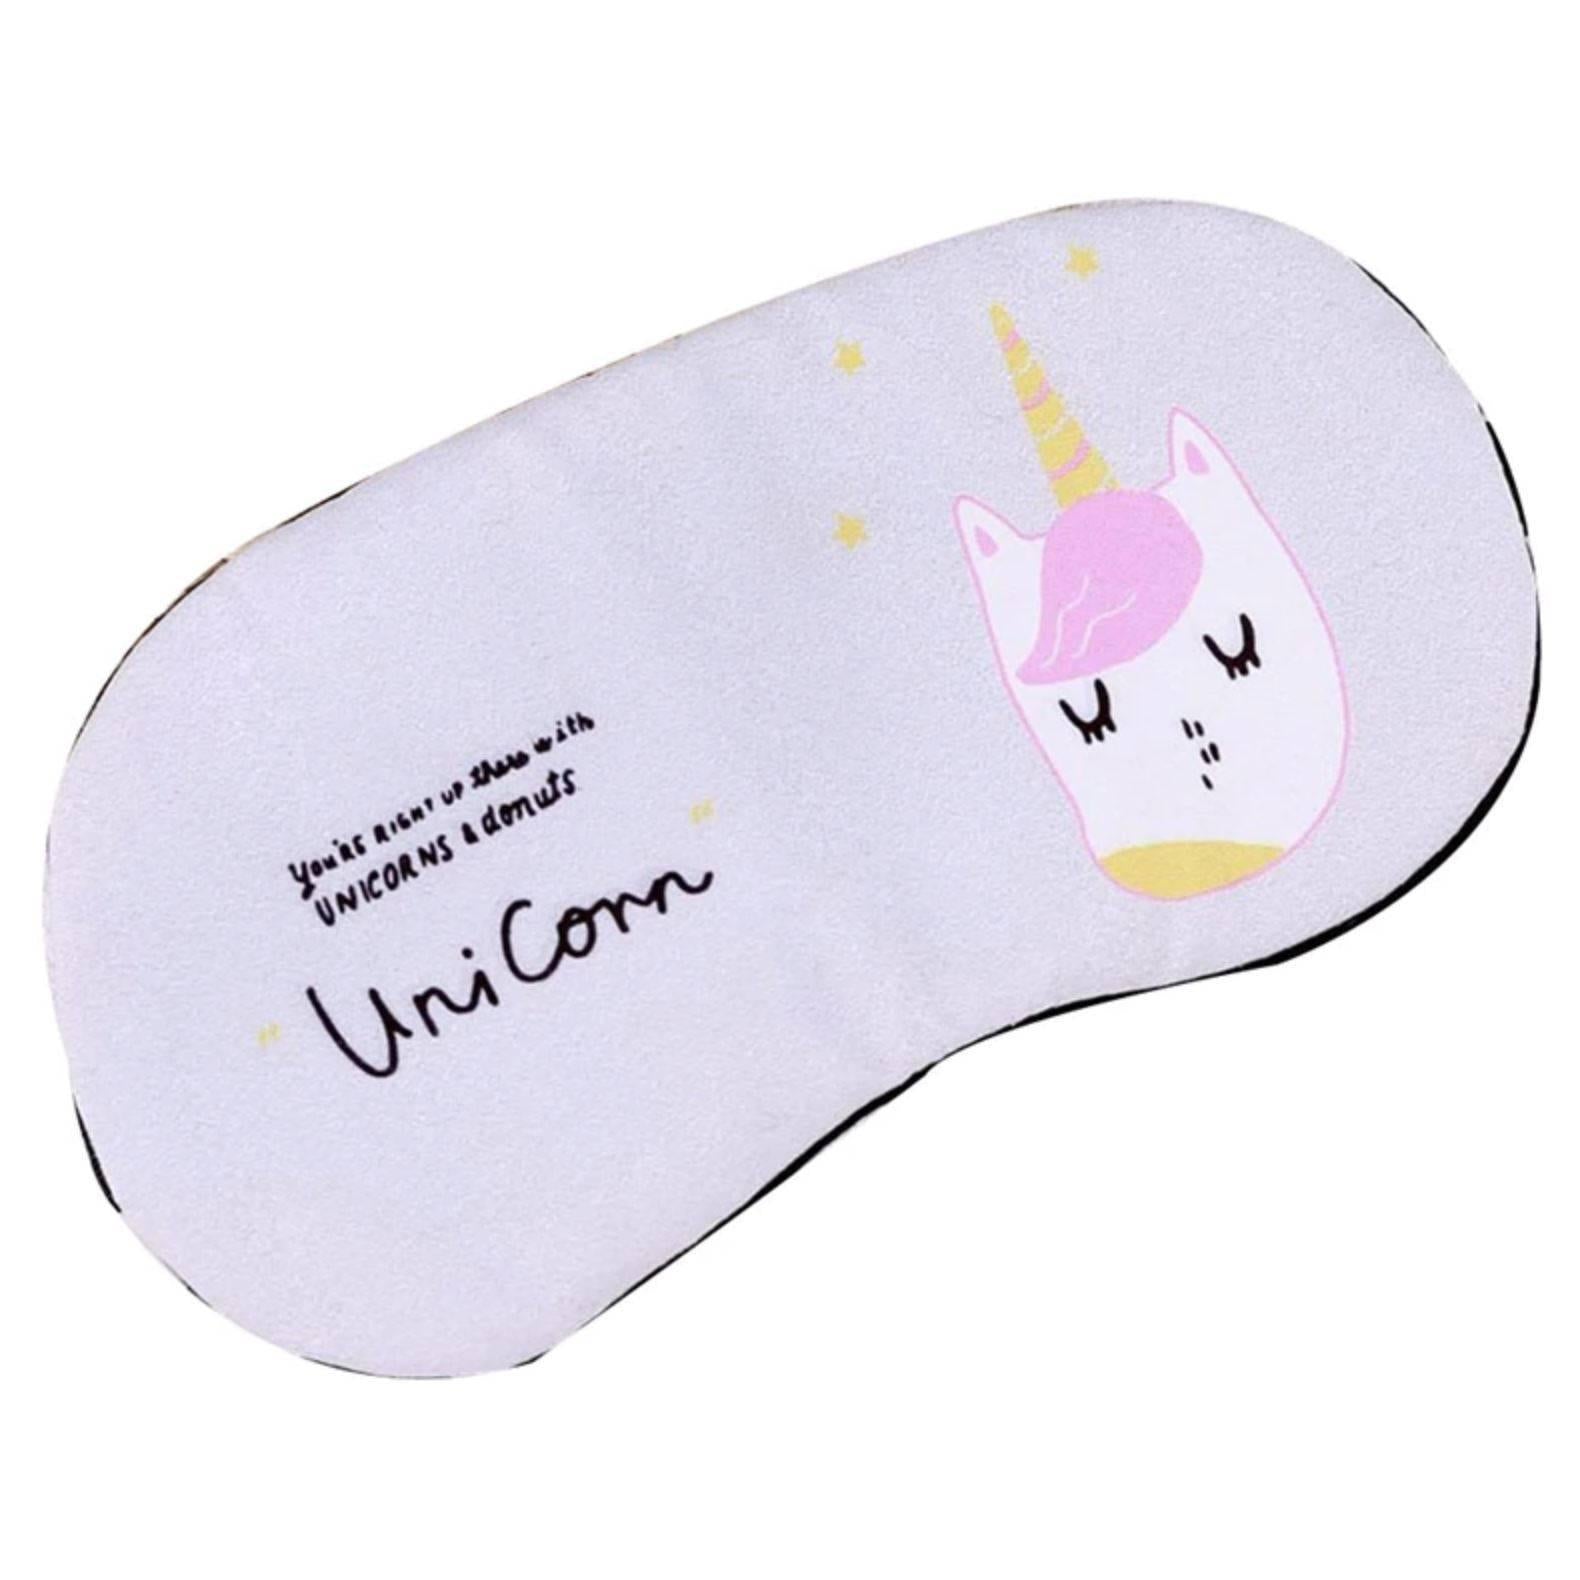 Máscara de unicornio Parche en el ojo - Un unicornio